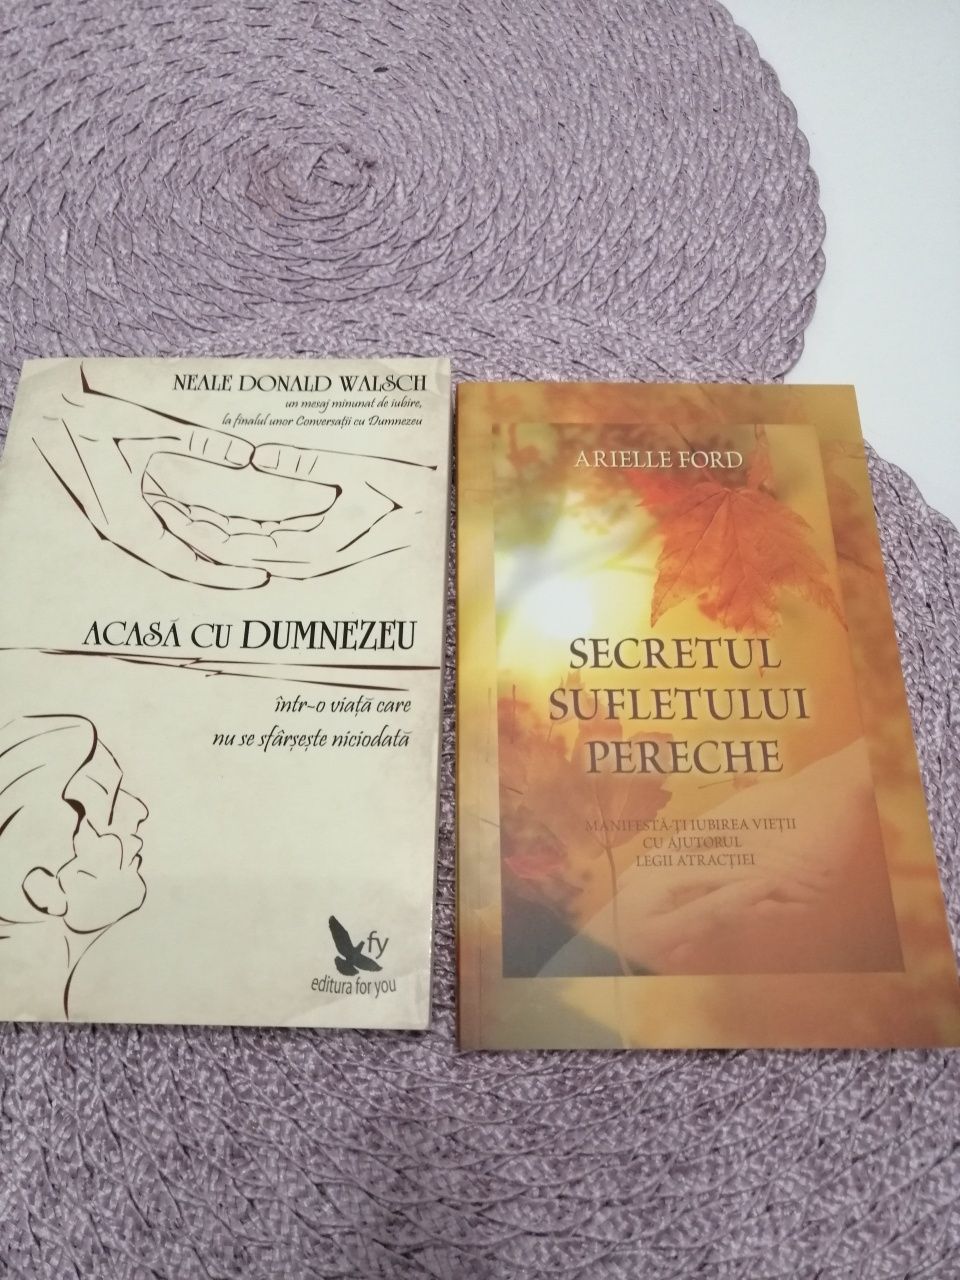 Cărți diverse de spiritualitate